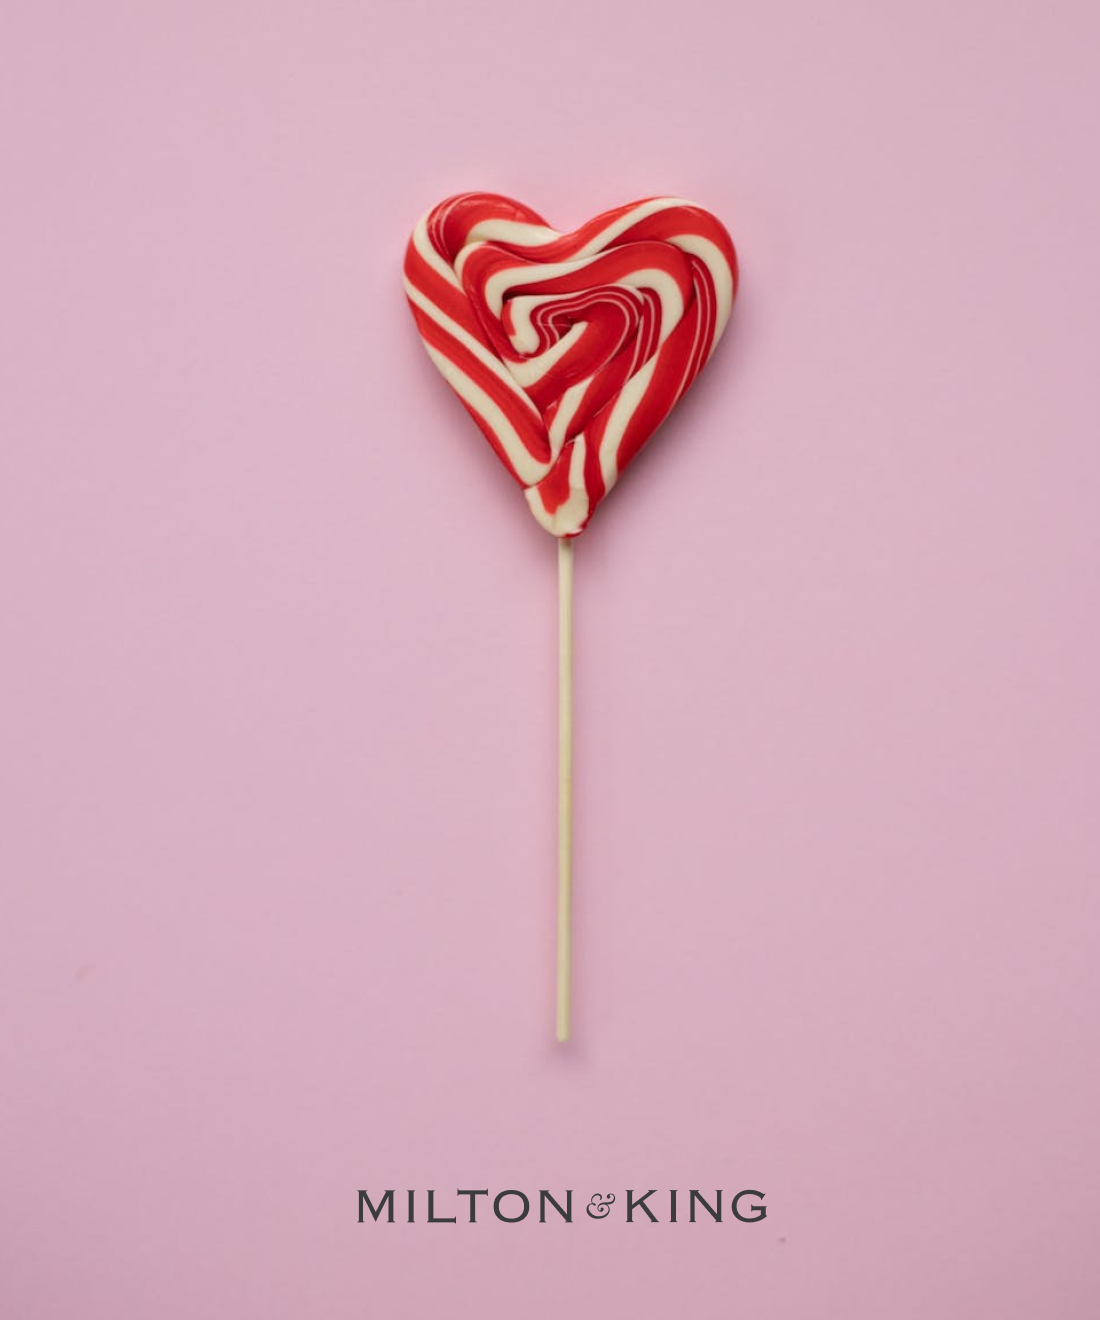 Milton & King - Un cadeau pour vous ! Carte Cadeau